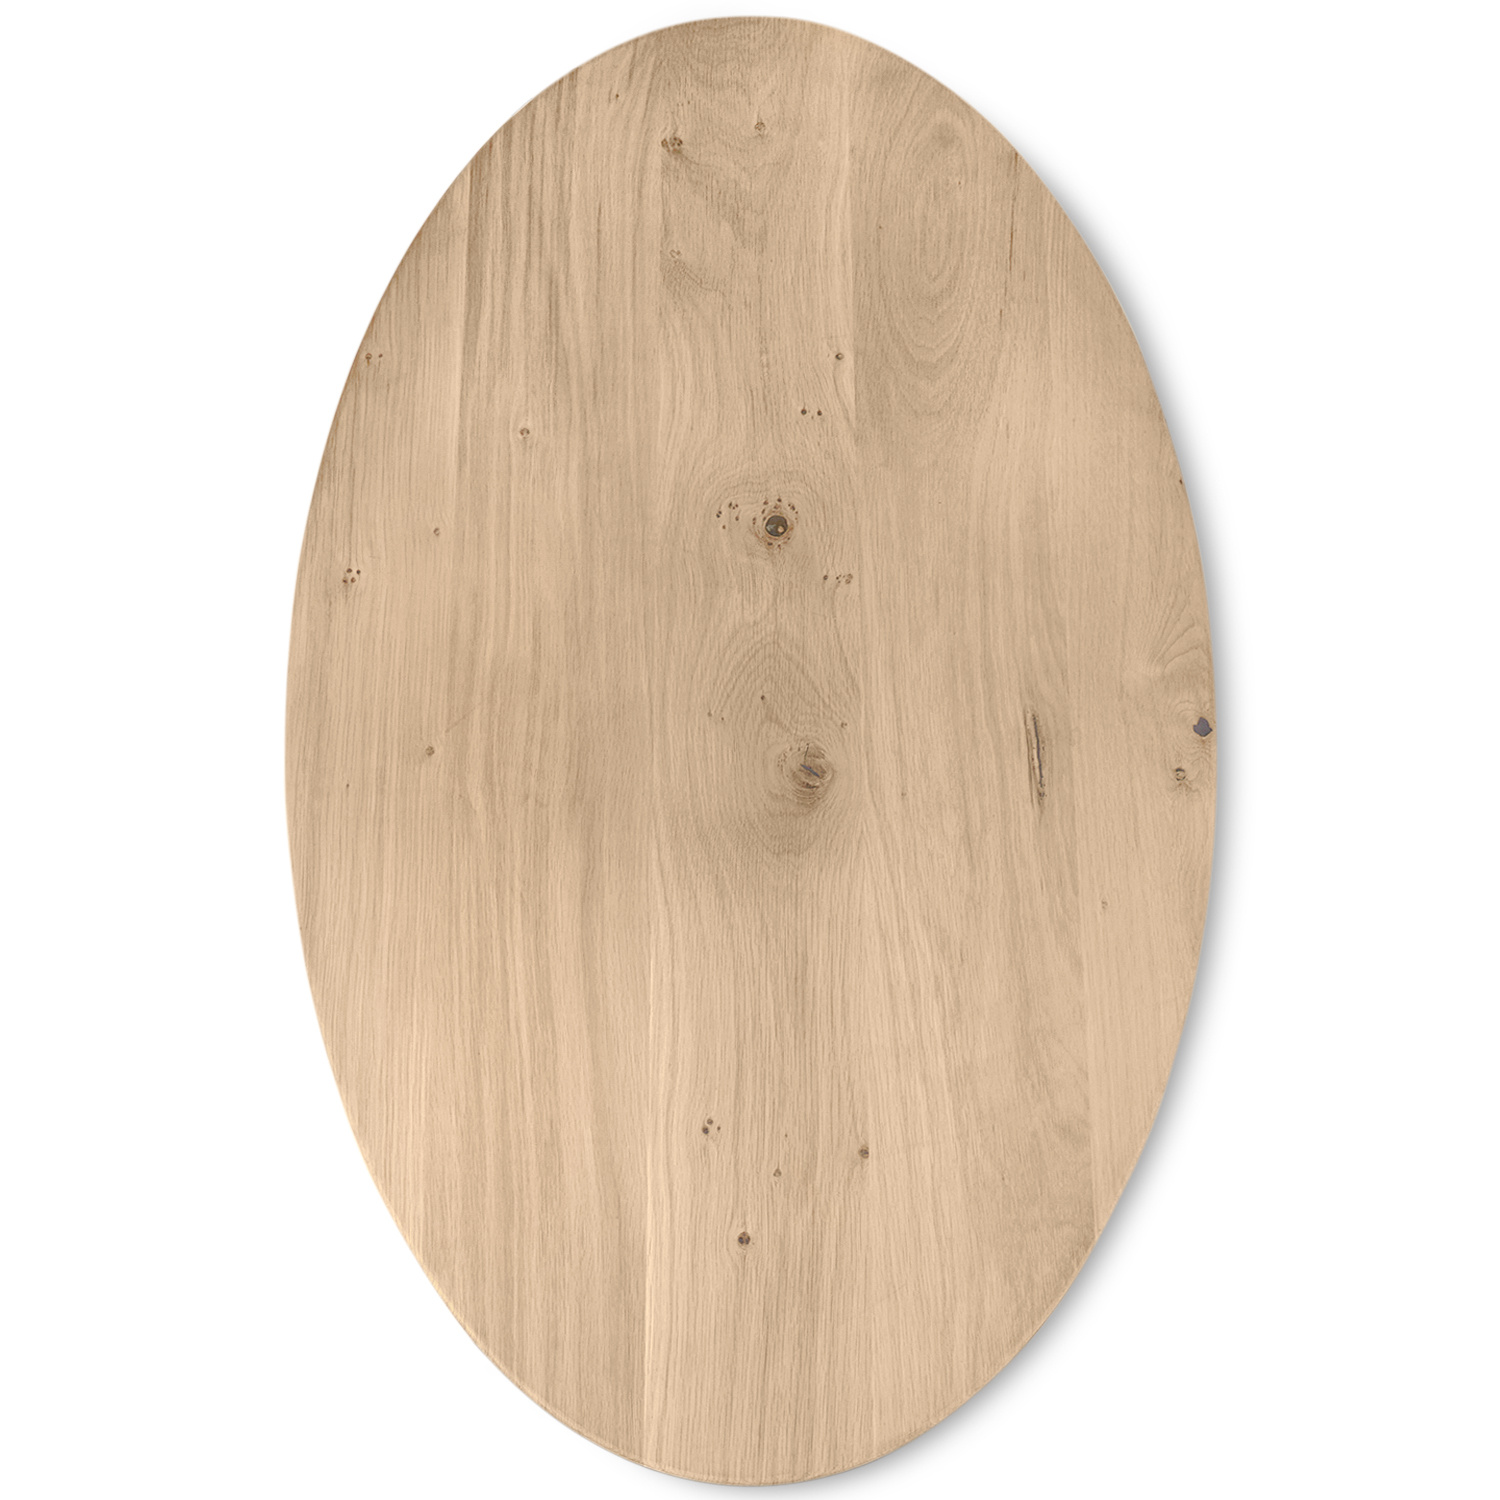  Tischplatte Wildeiche oval nach Maß - 4 cm dick (1-Schicht) - XXL Lamellen (14-20 cm breit) - Asteiche (rustikal) - Tischplatte ovale / ellipse Eiche - verleimt & künstlich getrocknet (HF 8-12%) - 40-117x80-247 cm